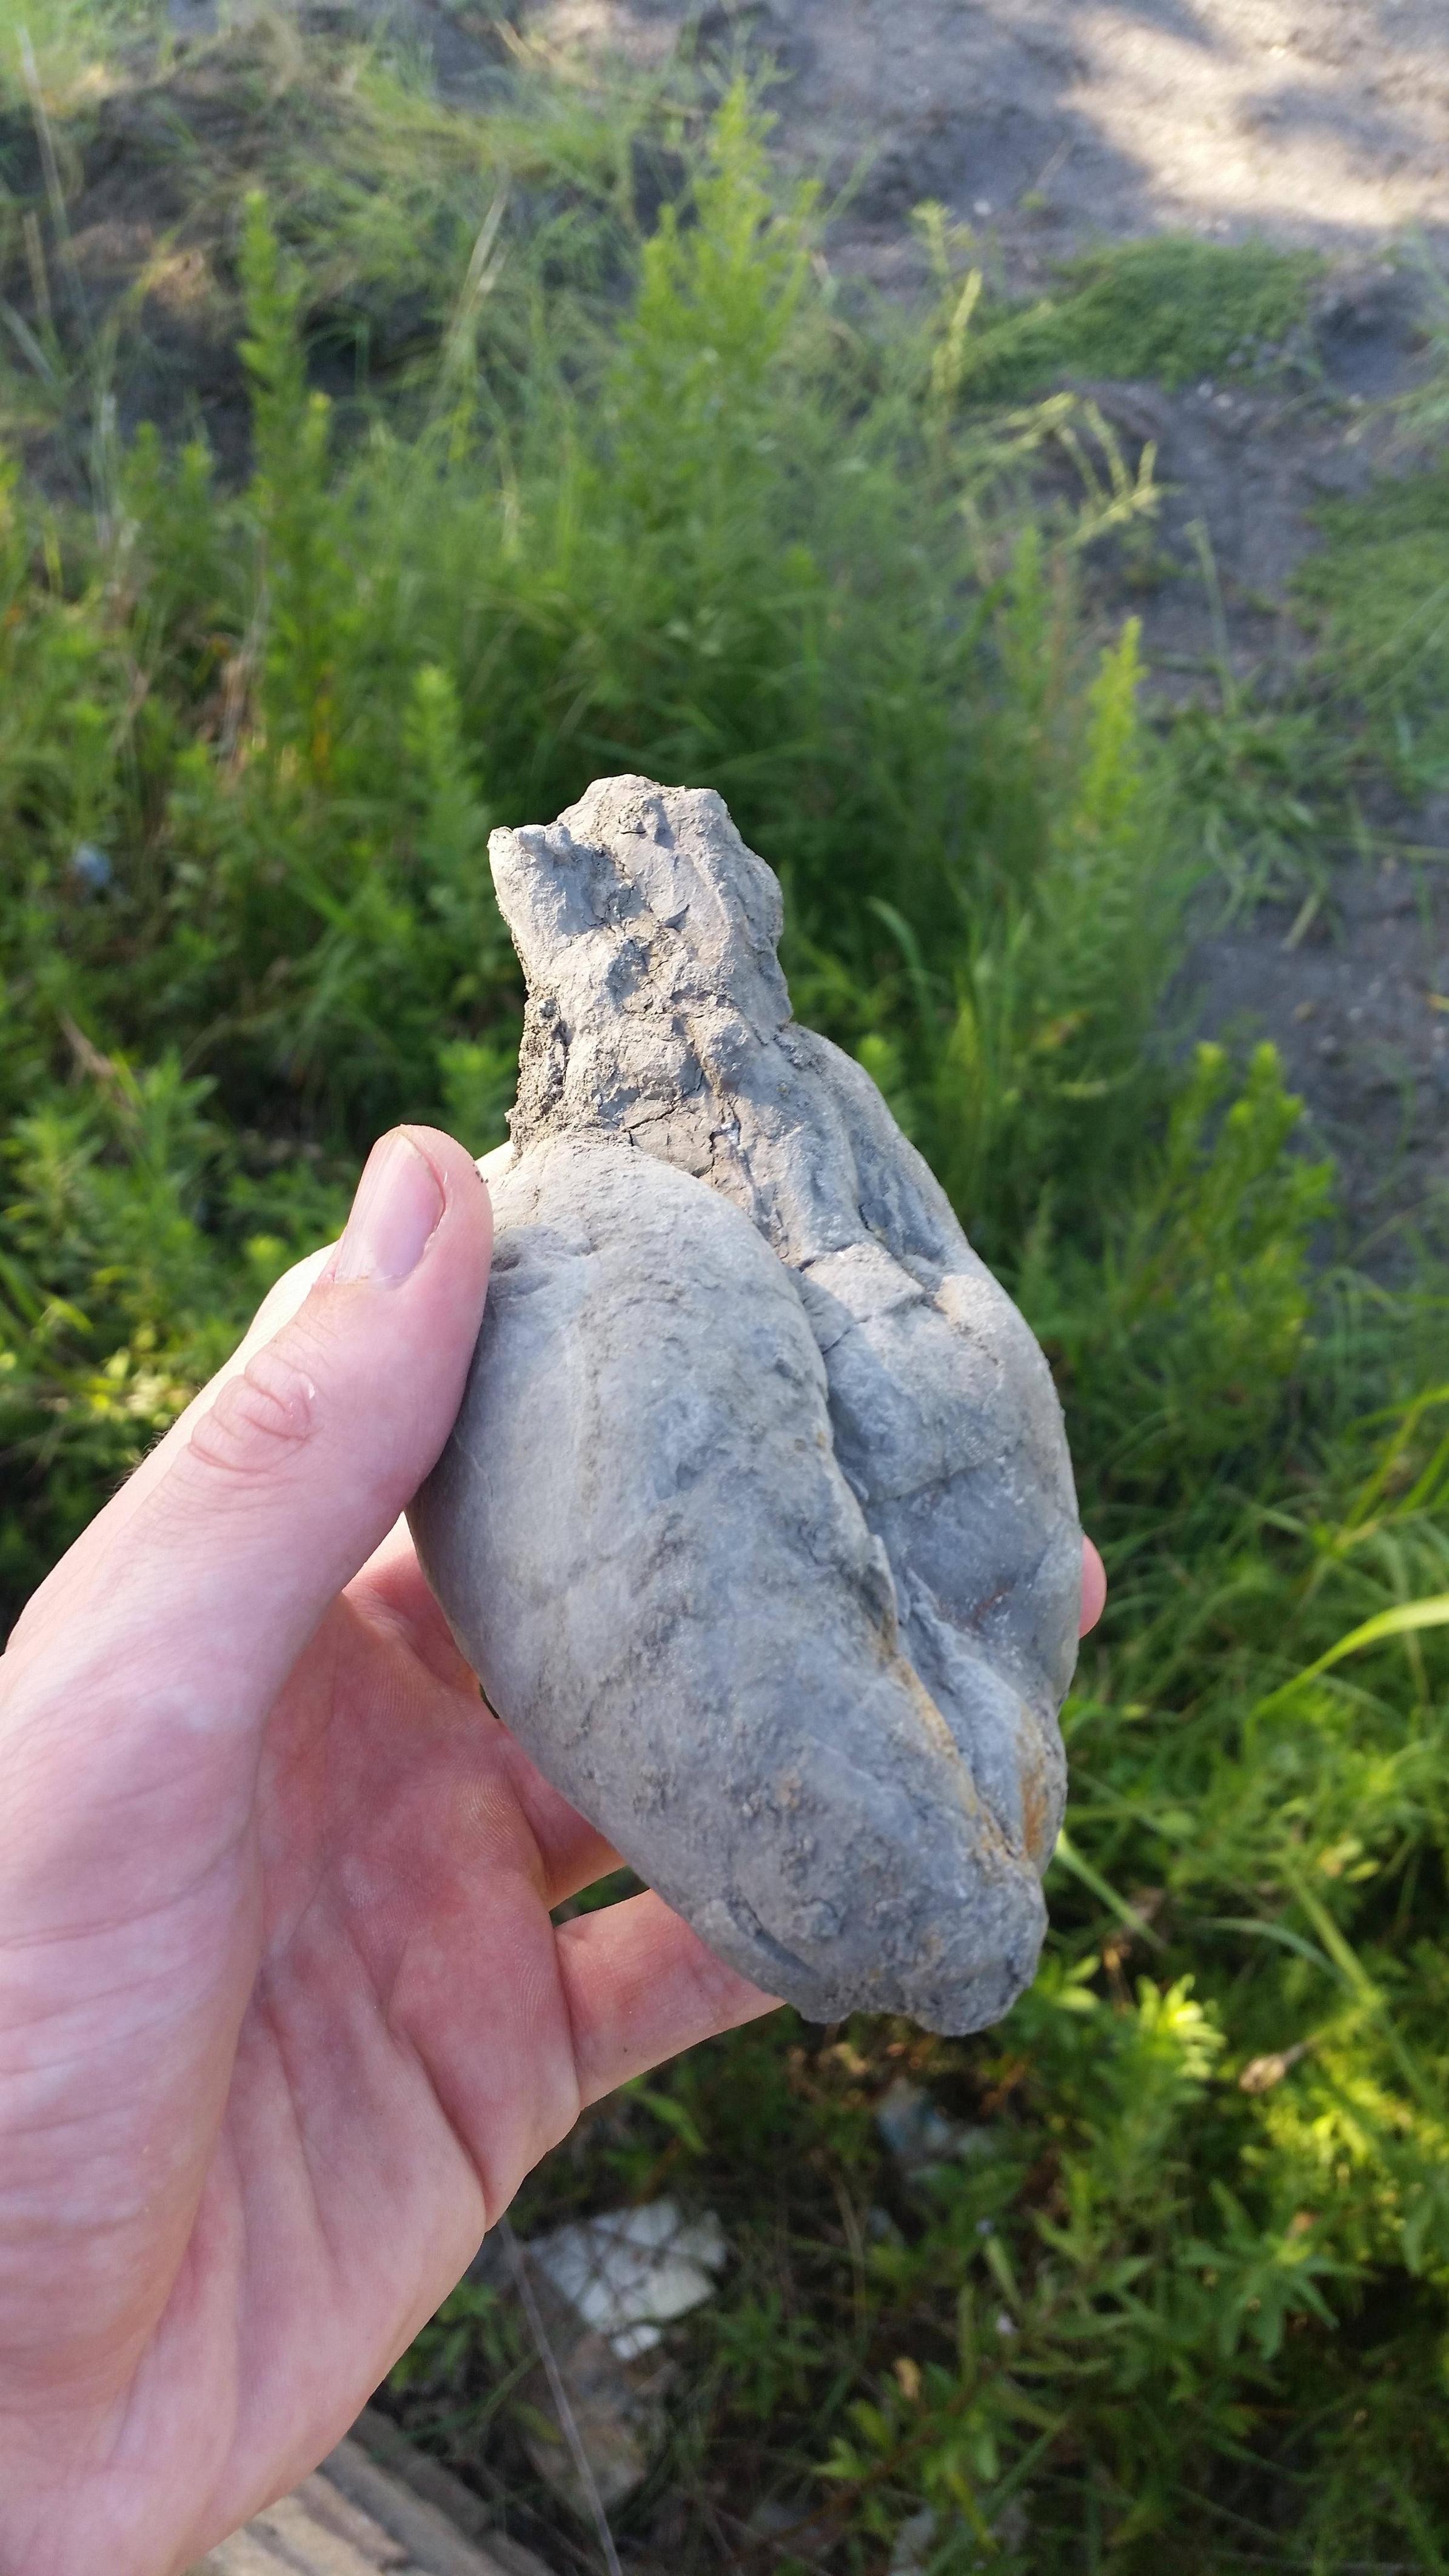 A rock shaped like a heart.